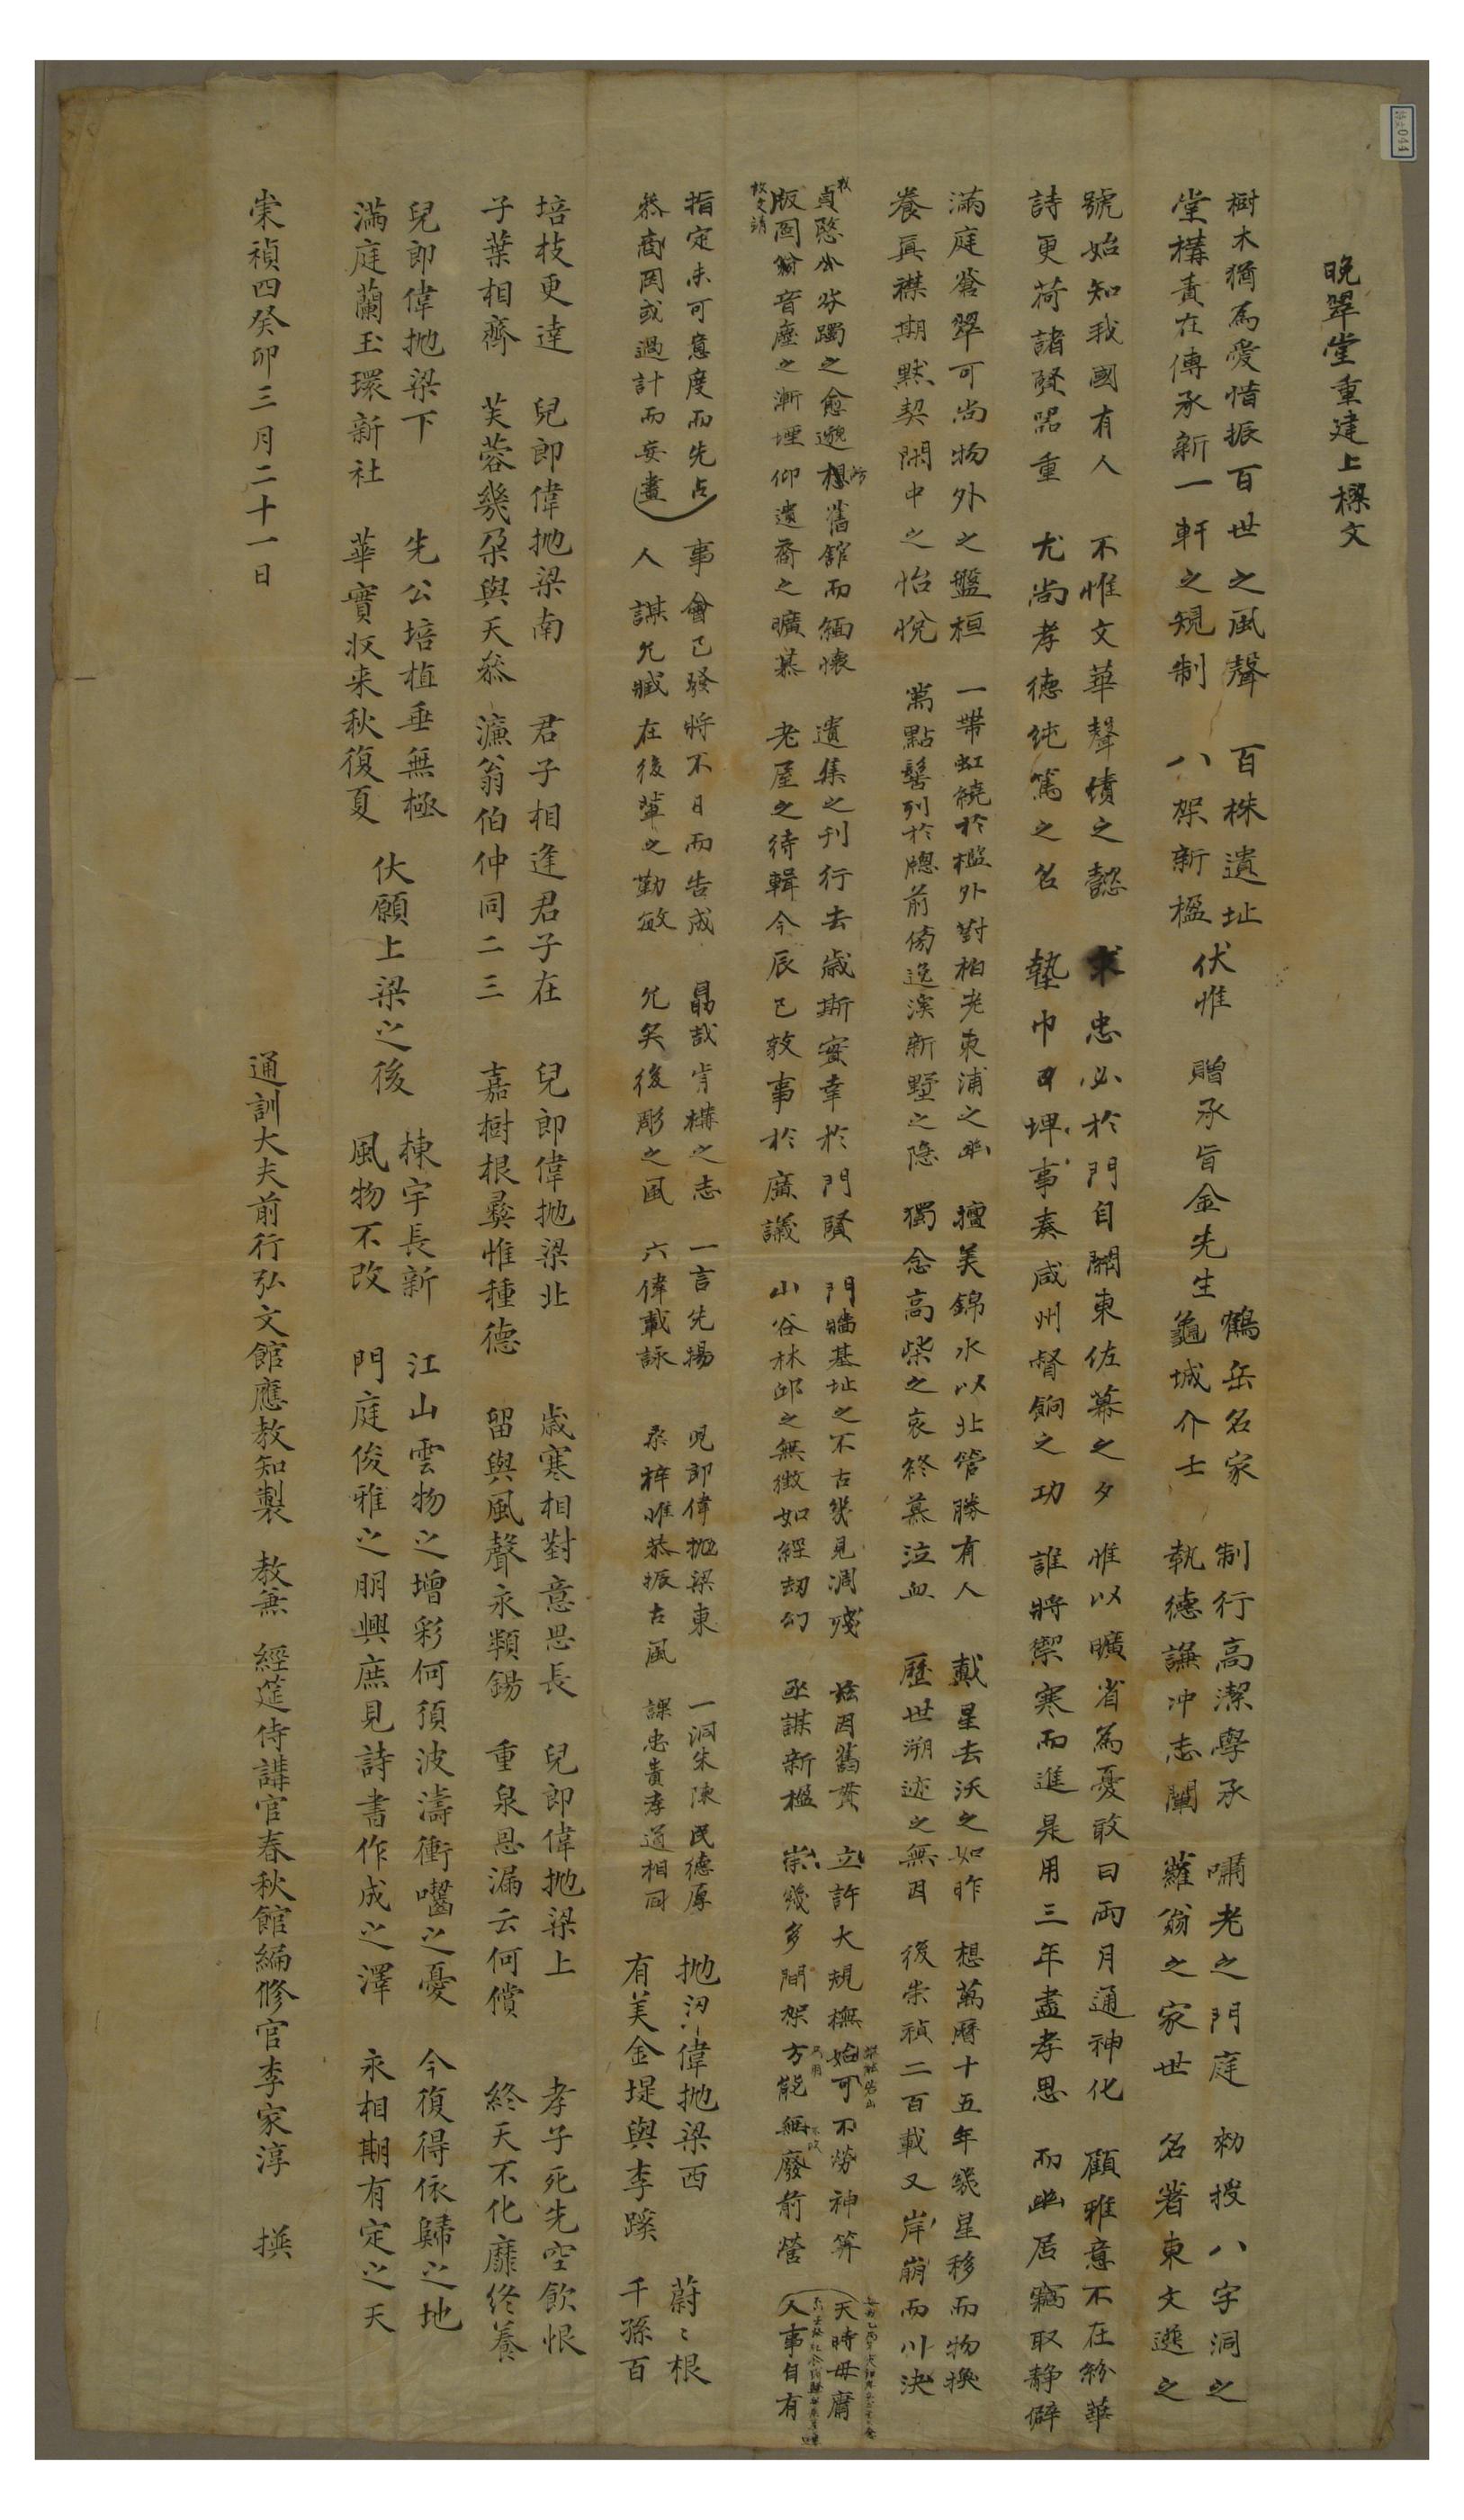 1843년 만취당 김사원이 세운 만취당을 중건하면서 이가순이 지어 올린 상량문